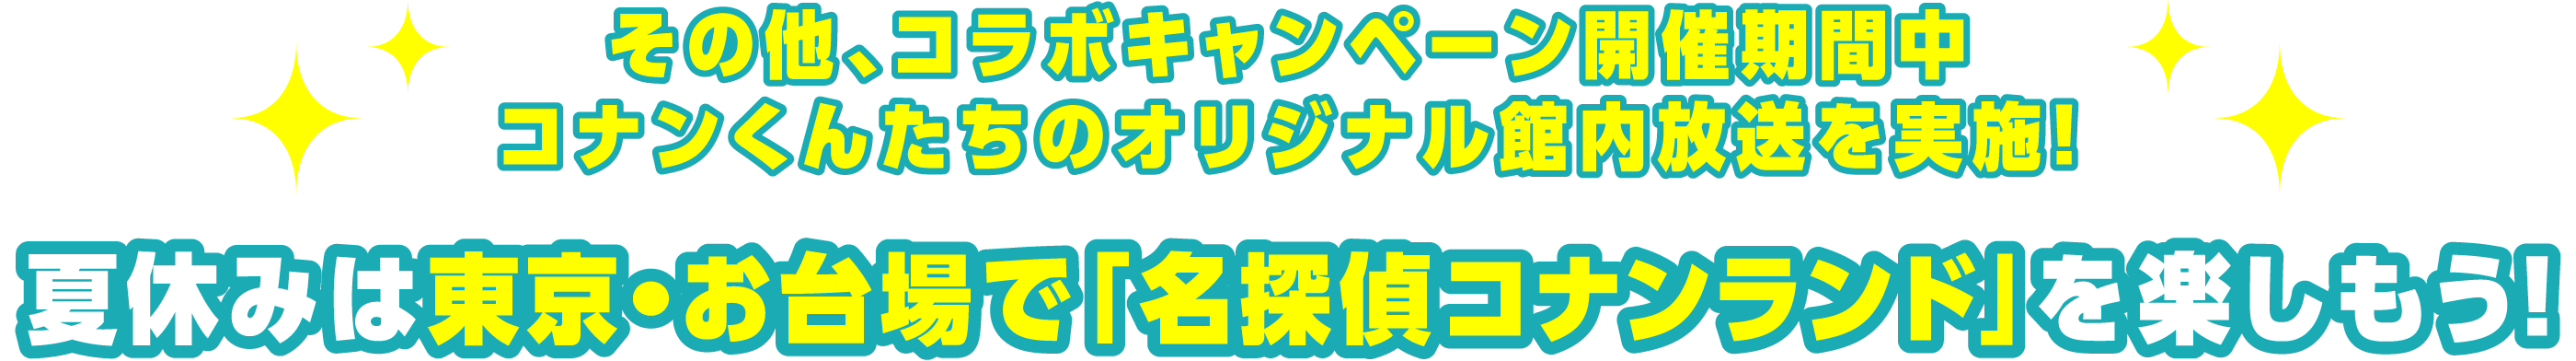 その他、コラボキャンペーン開催期間中 大人気キャラクターのオリジナル館内放送を実施！ 夏休みは東京・お台場で「名探偵コナンランド」を楽しもう！